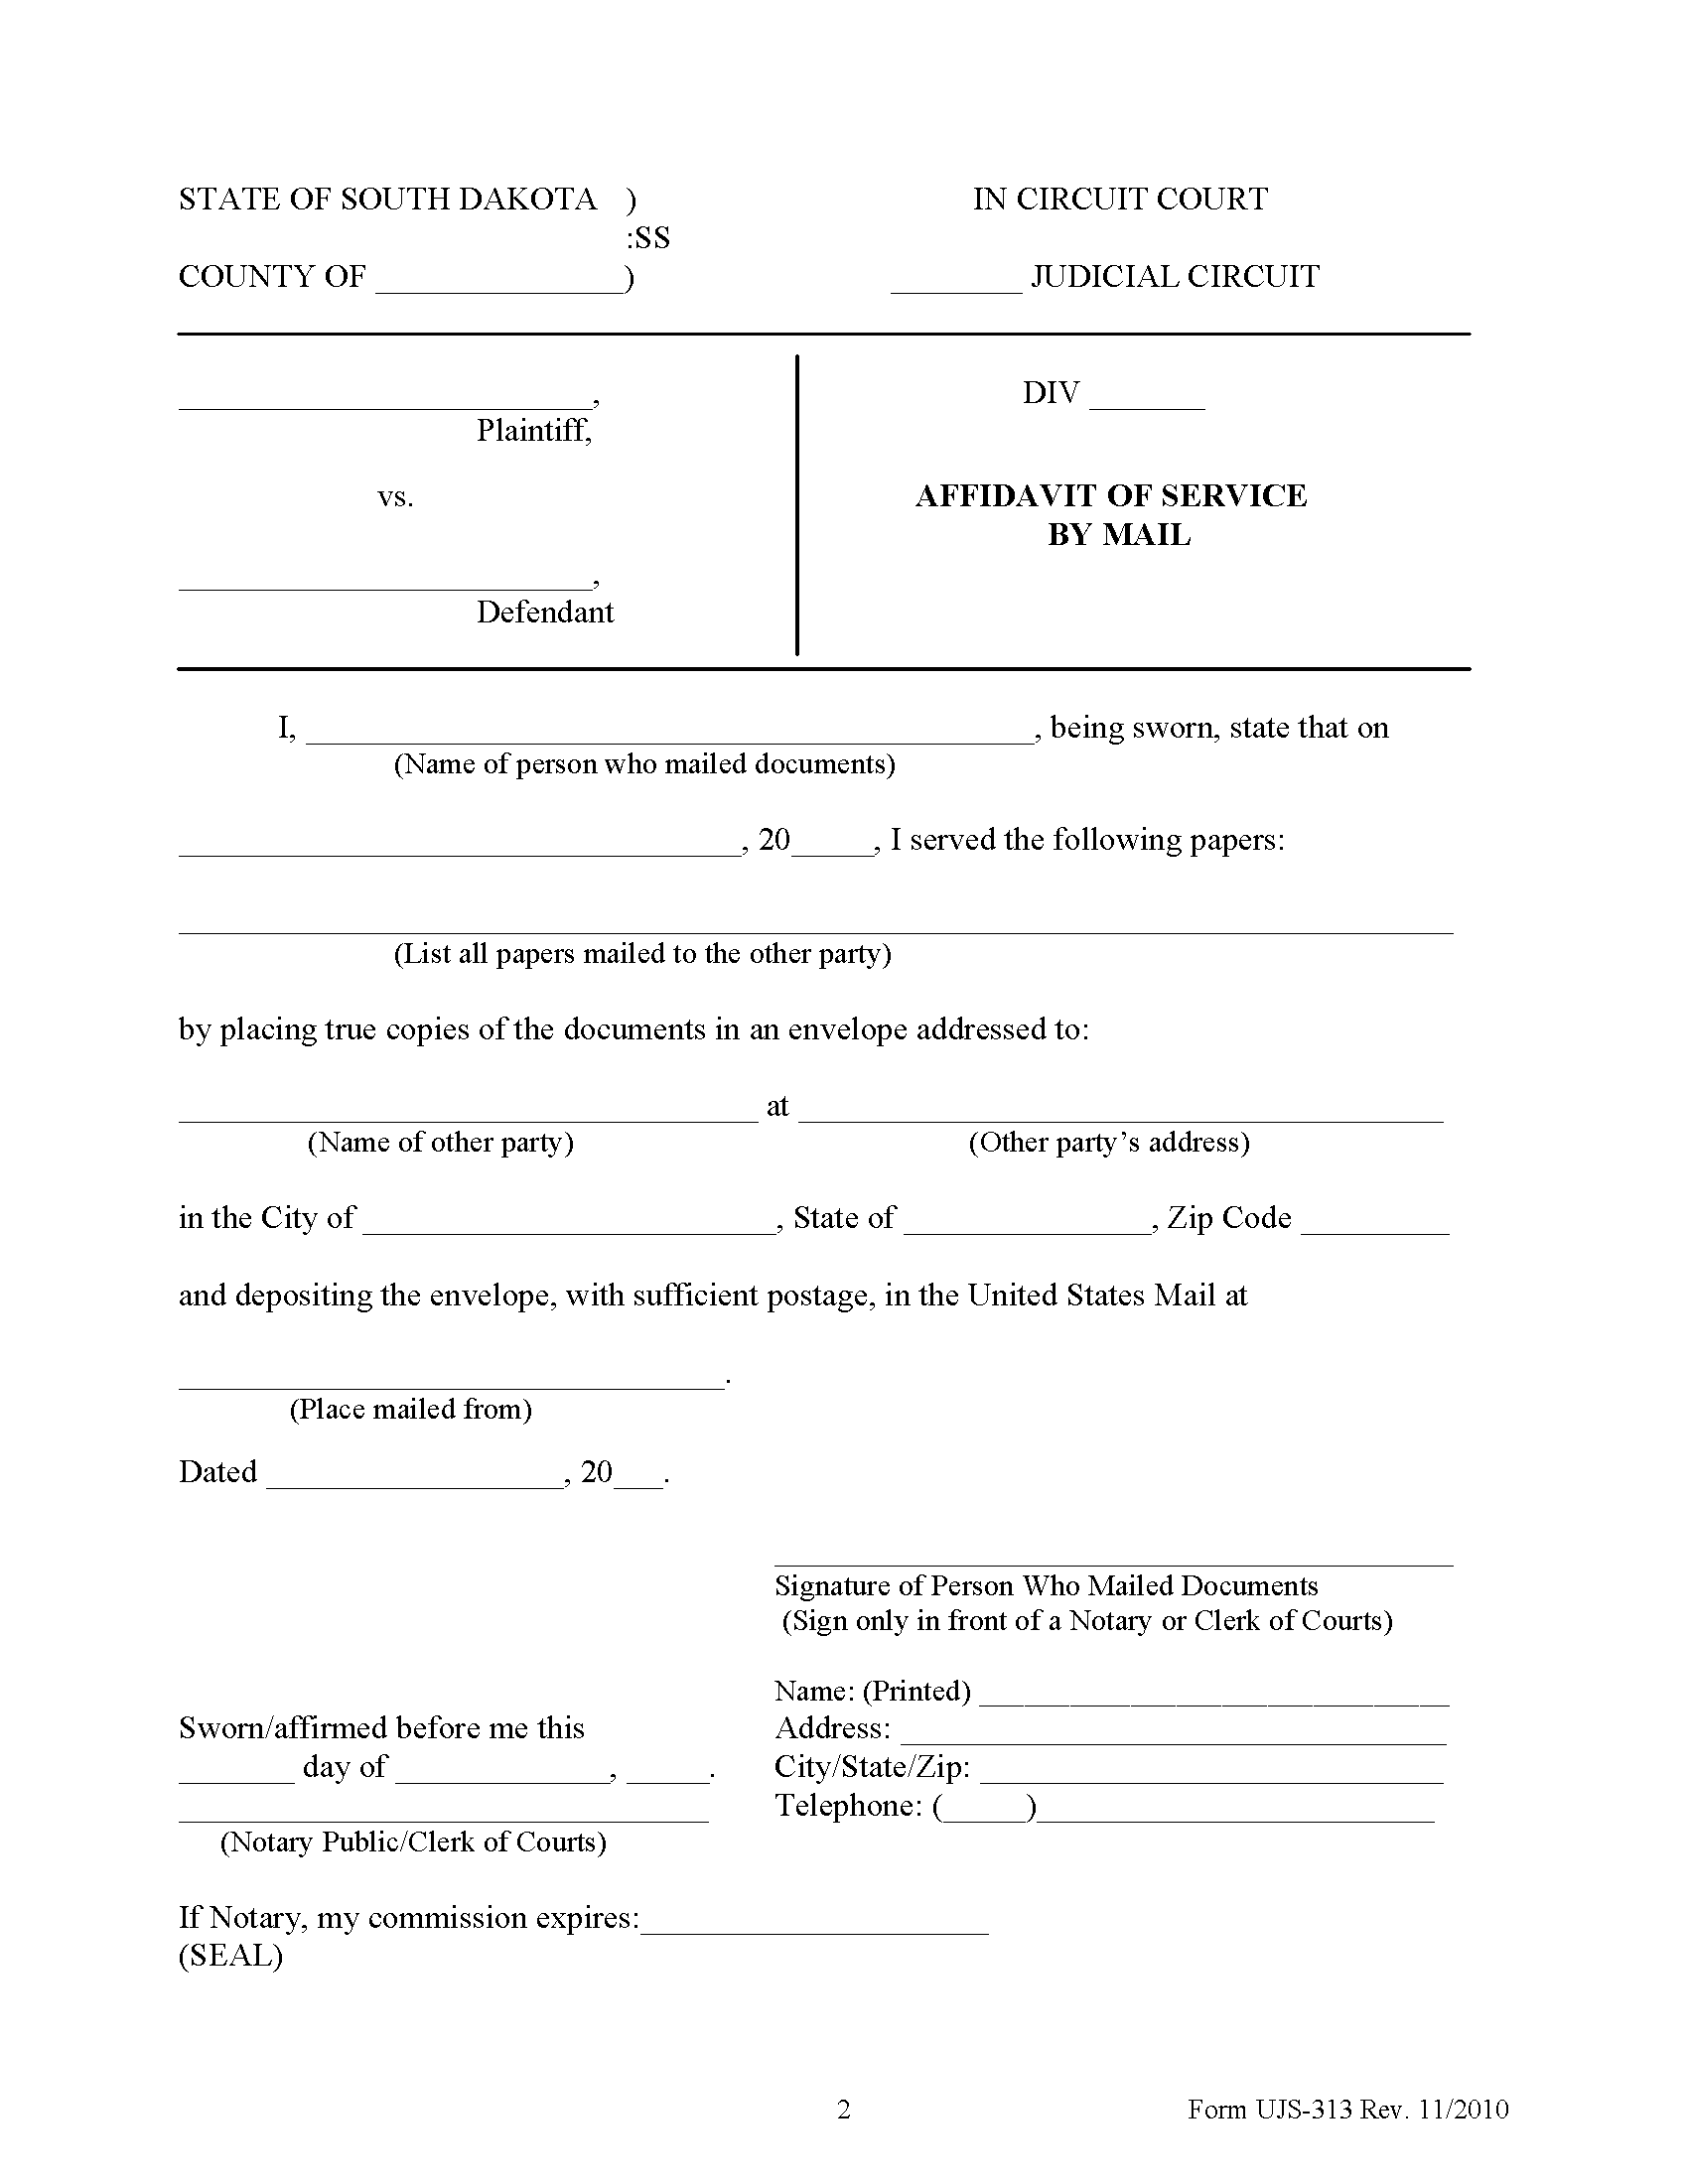 Affidavit of Service Form